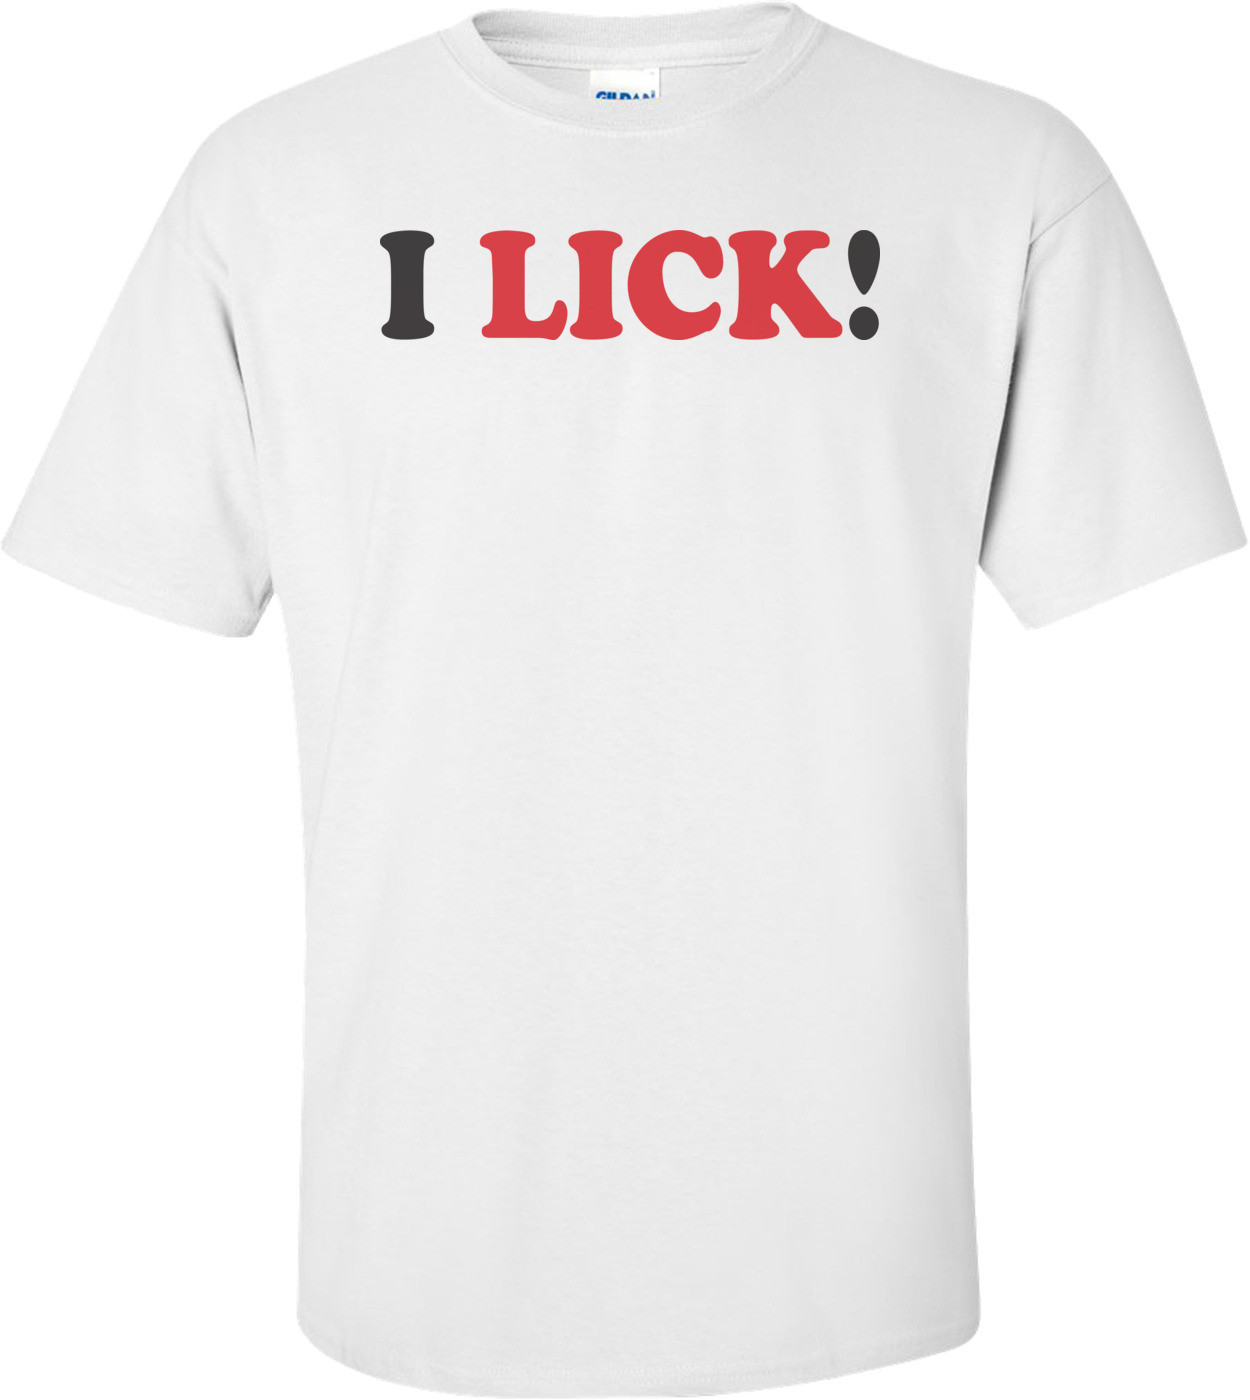 I Lick